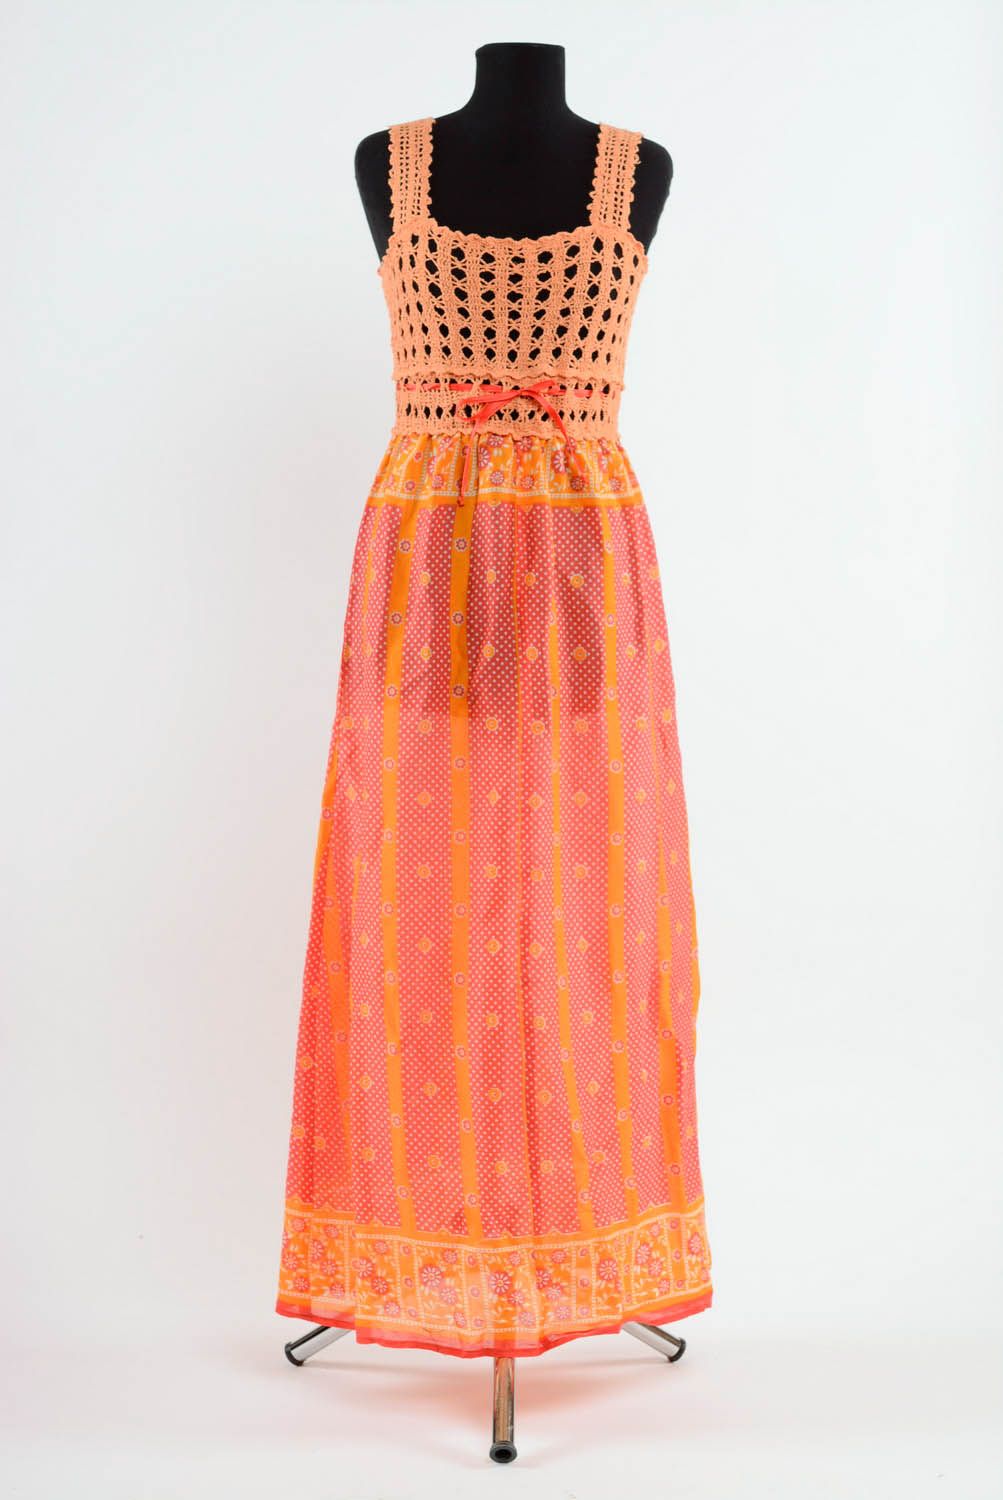 Robe couleur corail en acrylique tricotée à main photo 1